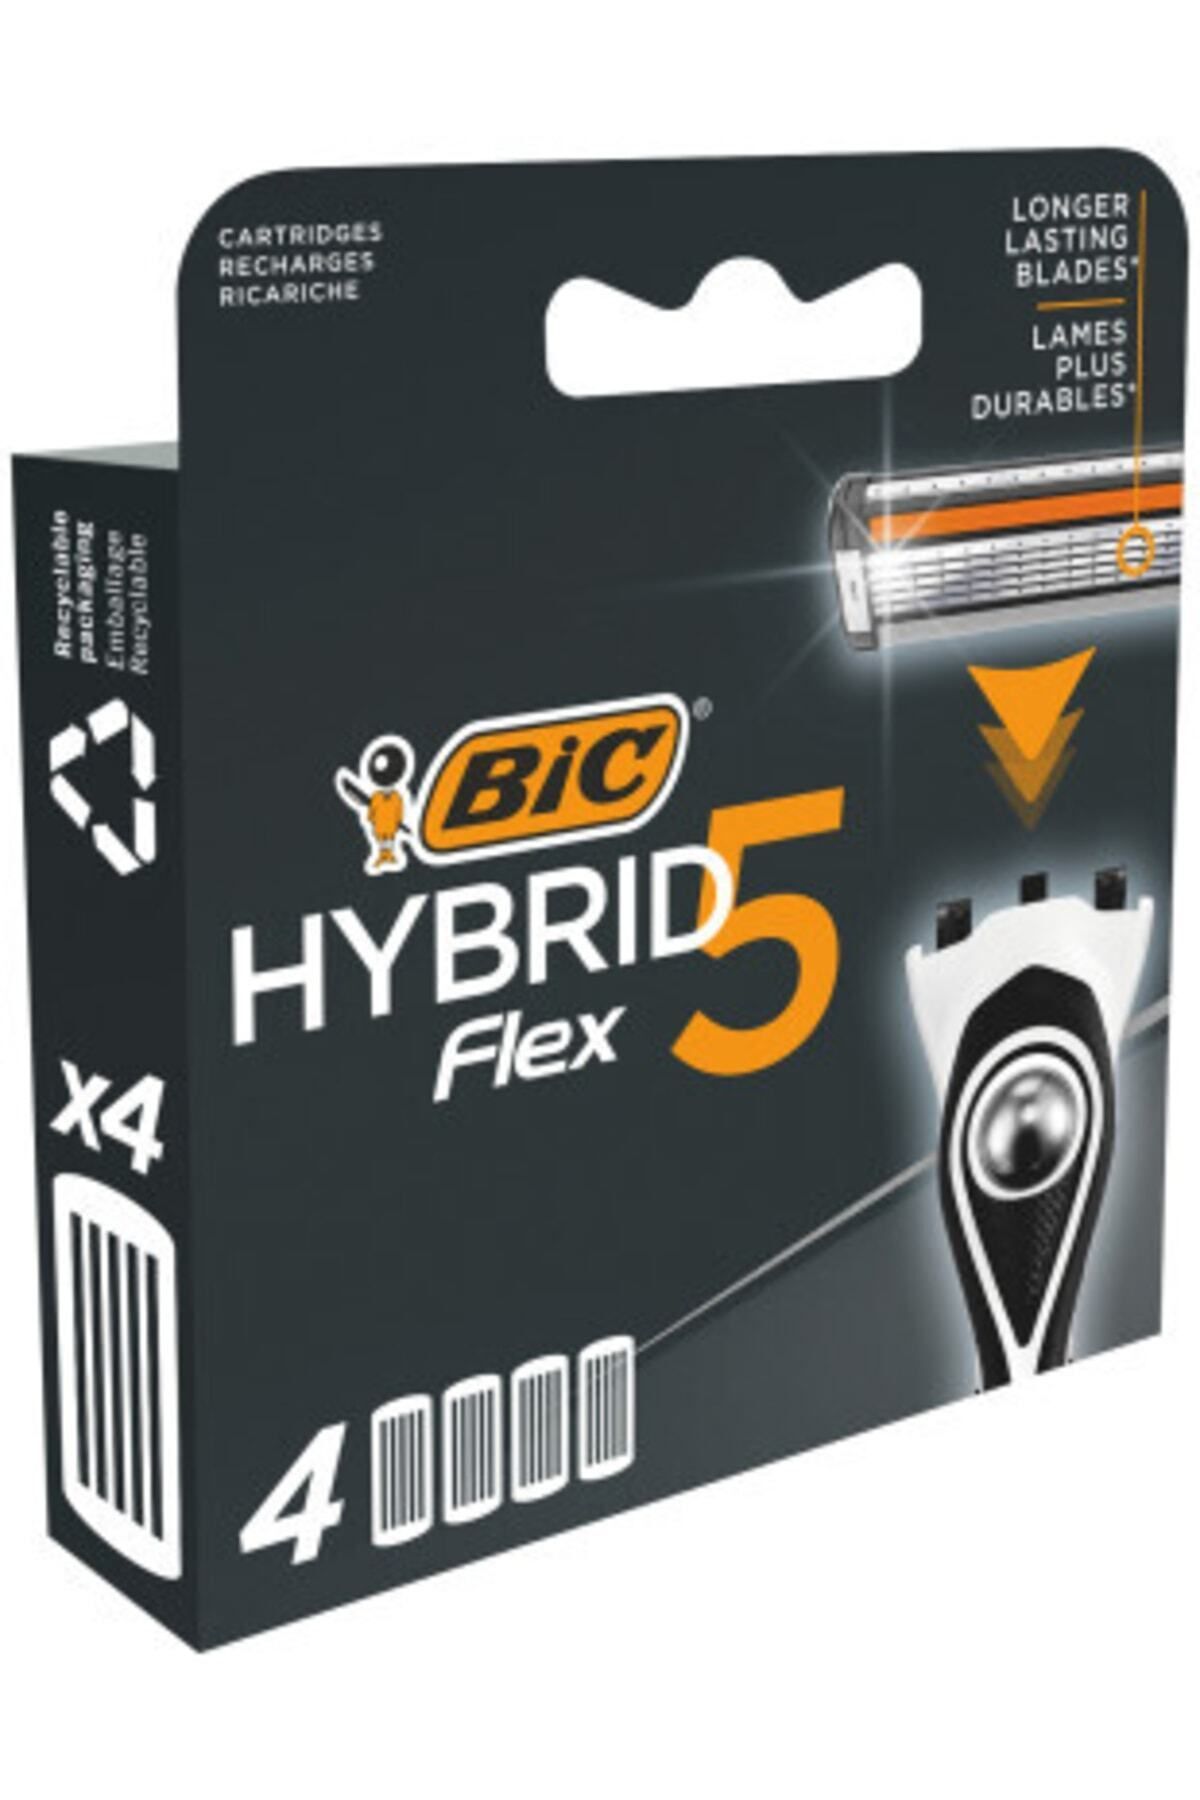 Bic Flex 5 Hybrid Yedek Tıraş Bıçağı Kartuşu 4'lü (5 BIÇAK)